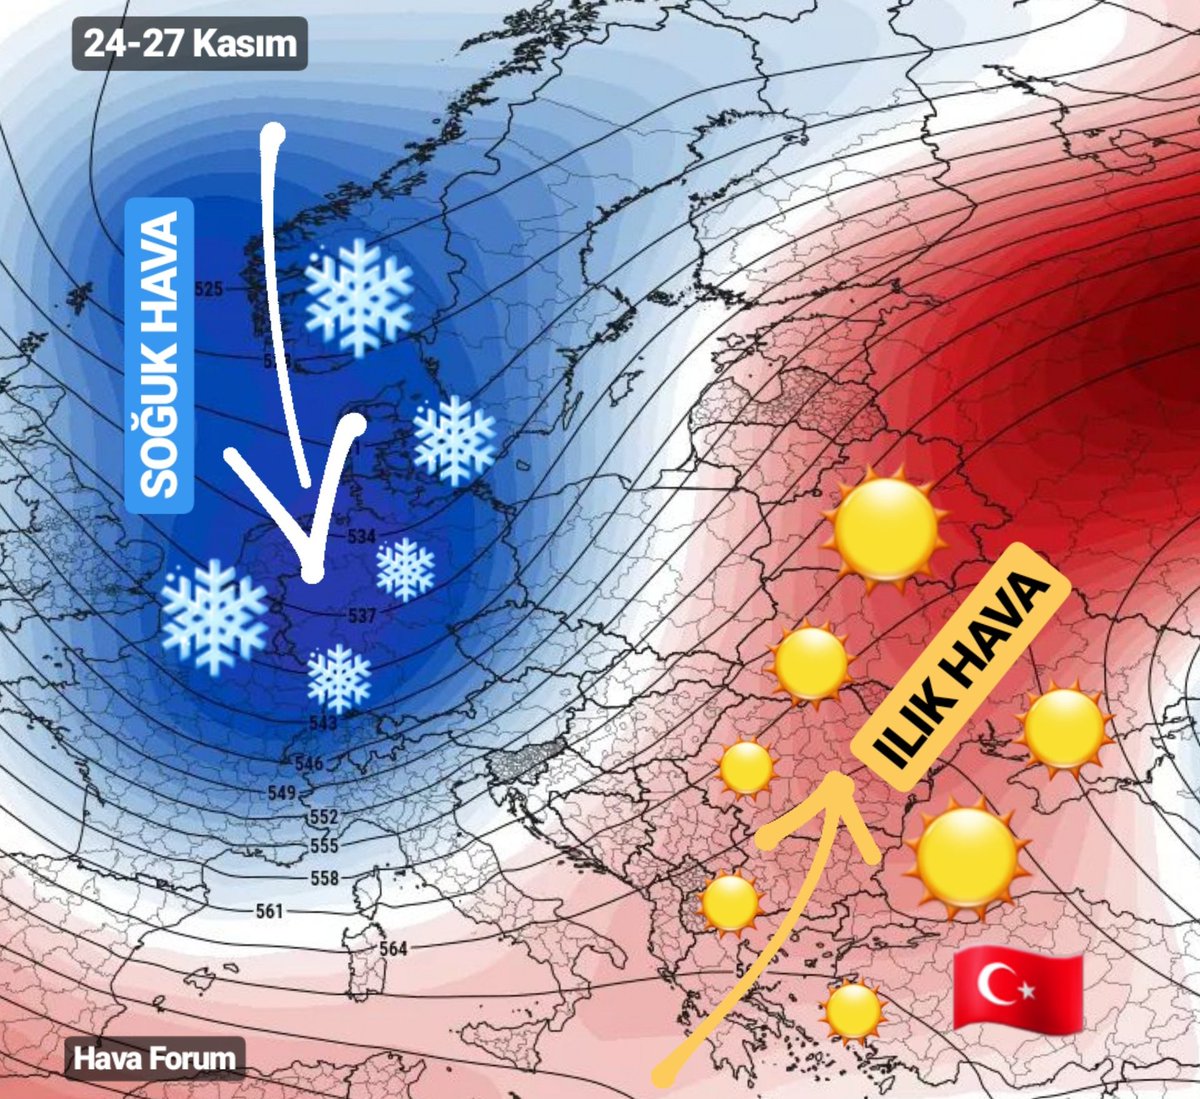 istanbul-hava-durumu-hafta-sonu Hafta Sonu Hava Durumu (25-26 Kasım) Haberler  